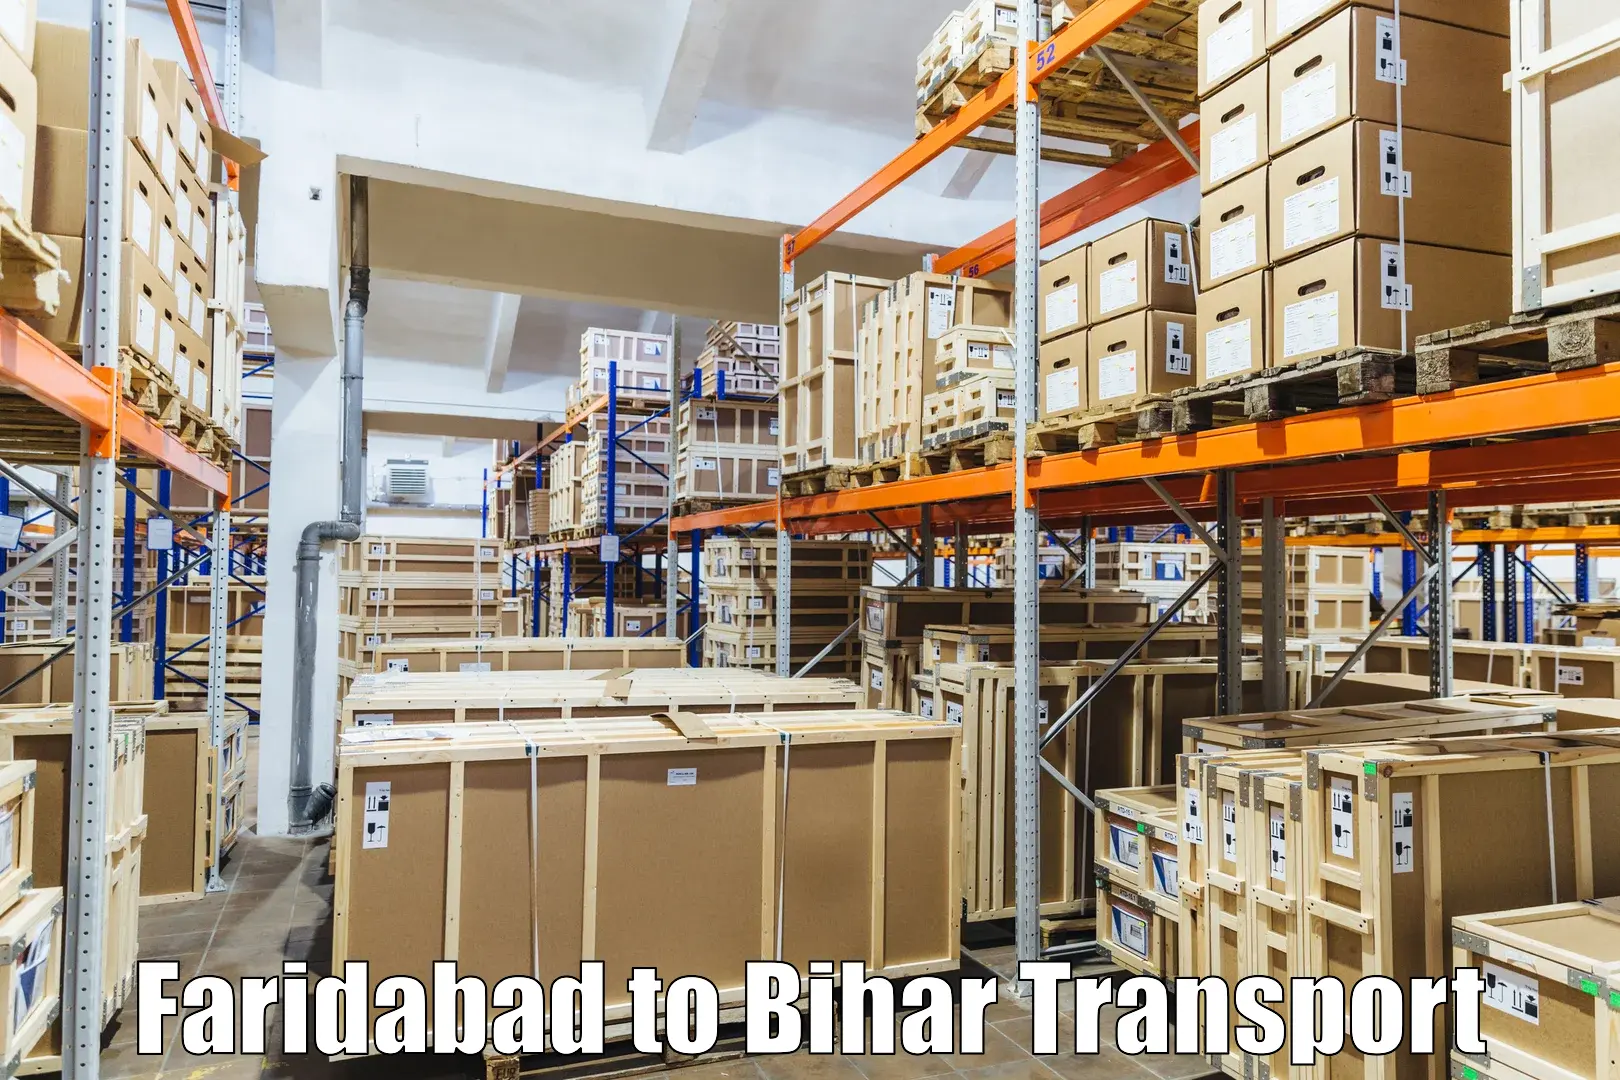 Daily transport service Faridabad to Minapur